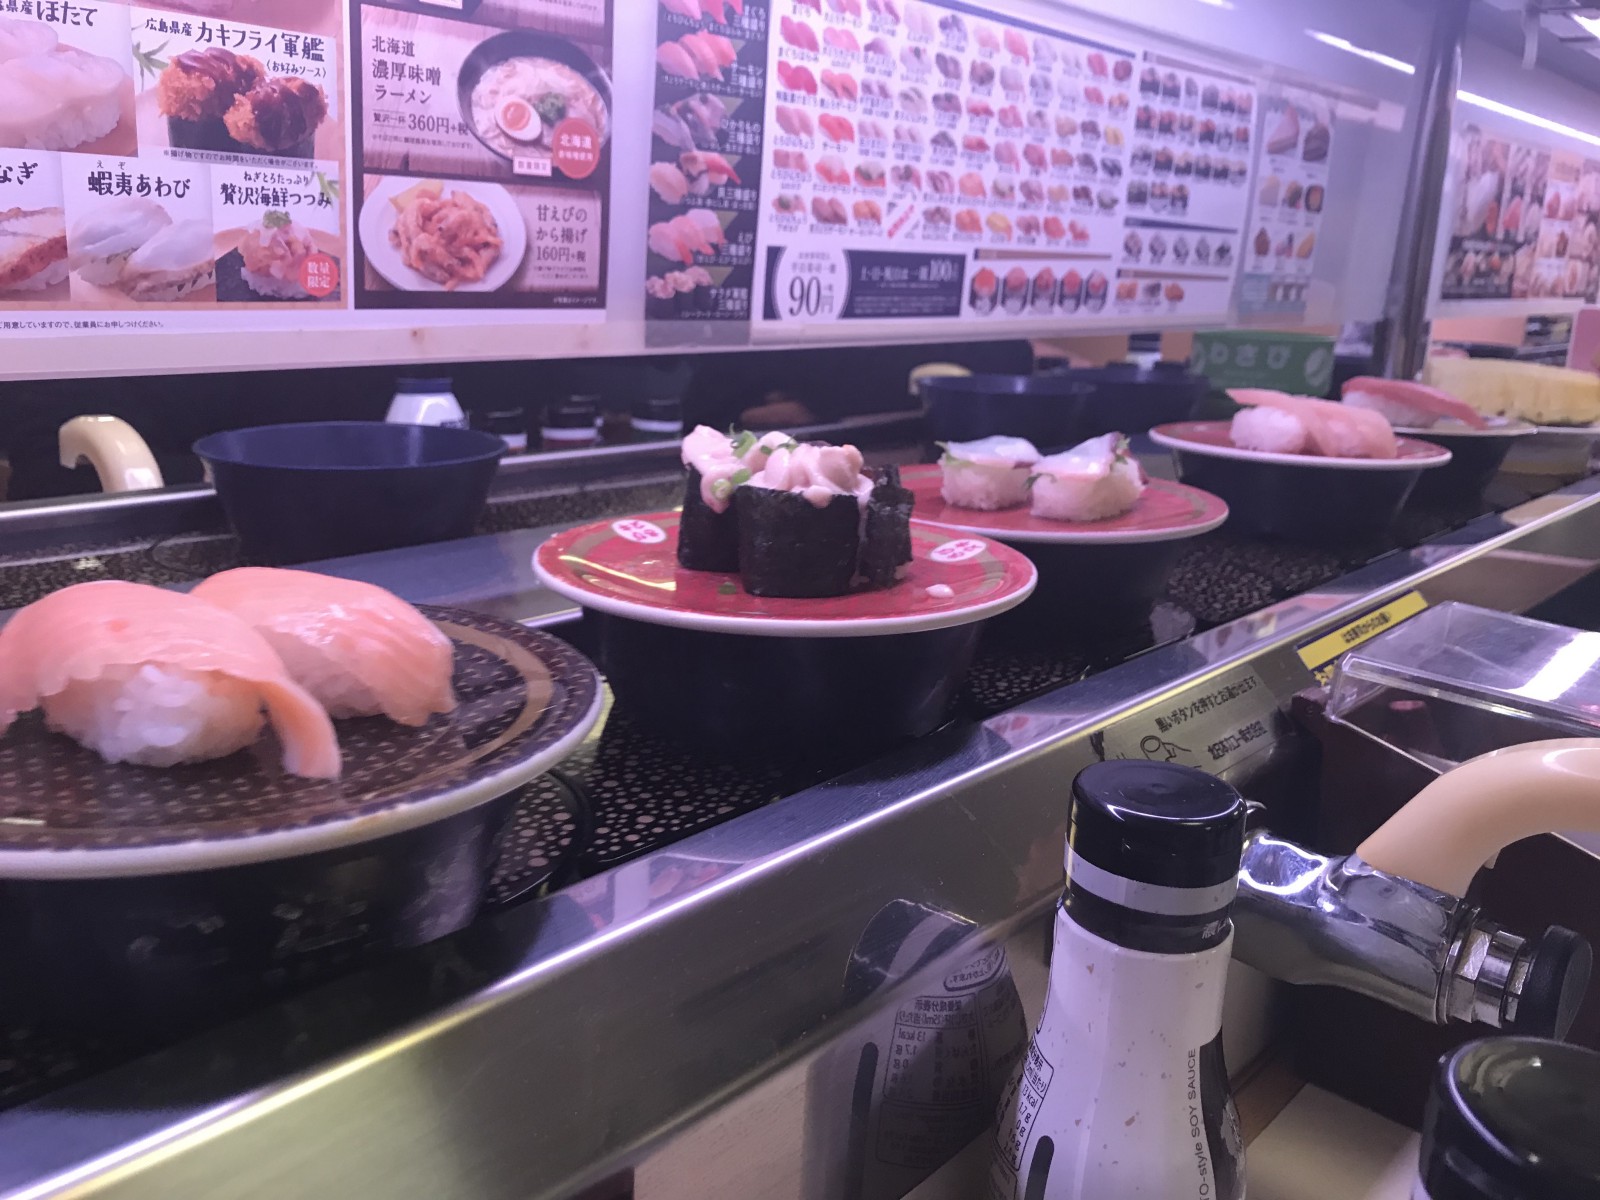 Sushi on conveyor belt at Hama Sushi